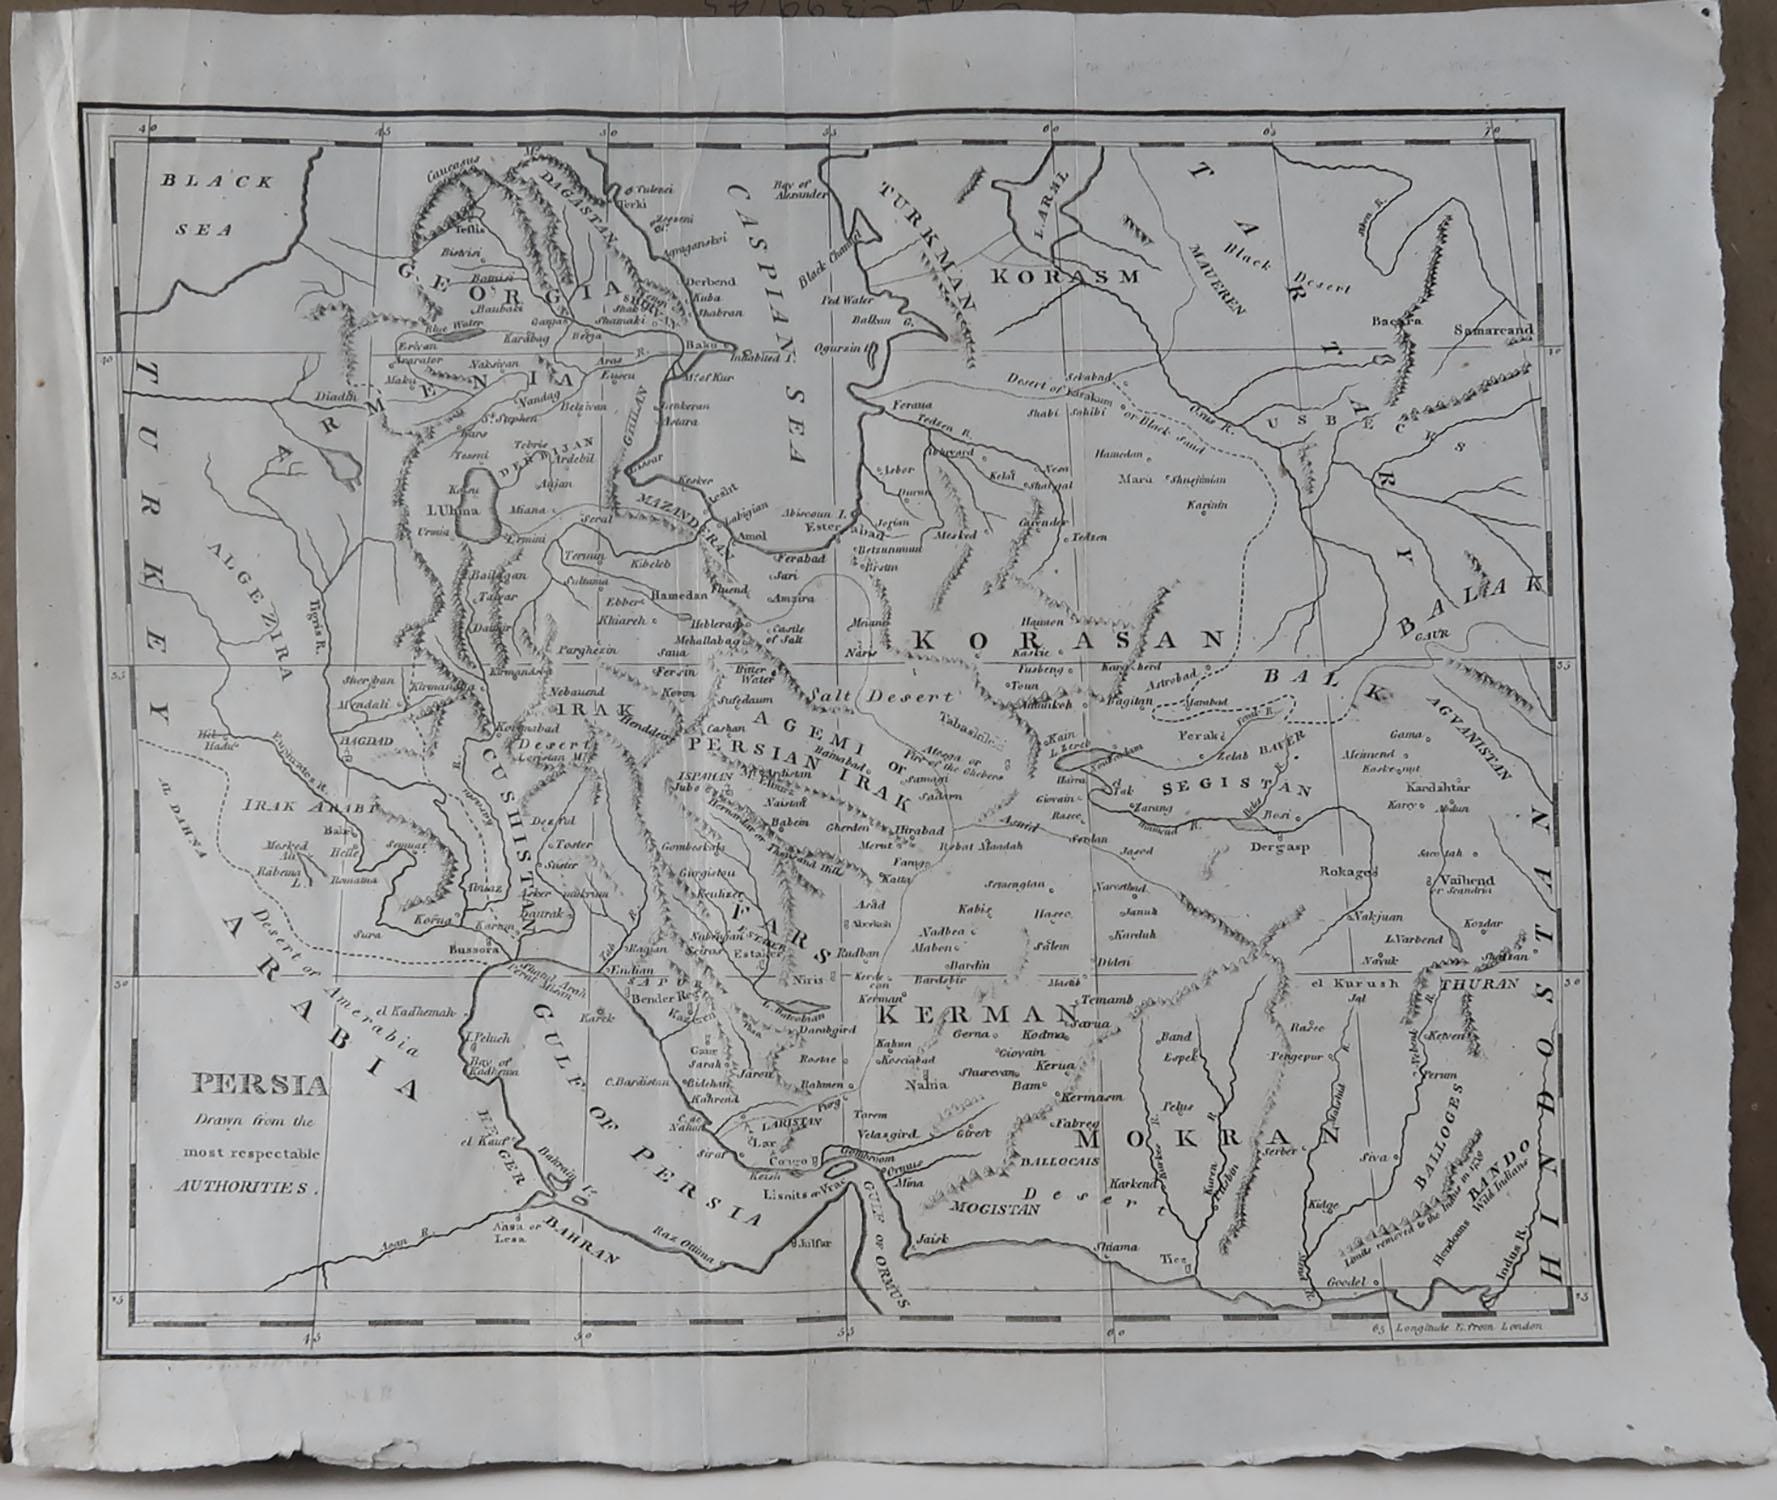 Other Original Antique Map of Persia, circa 1820